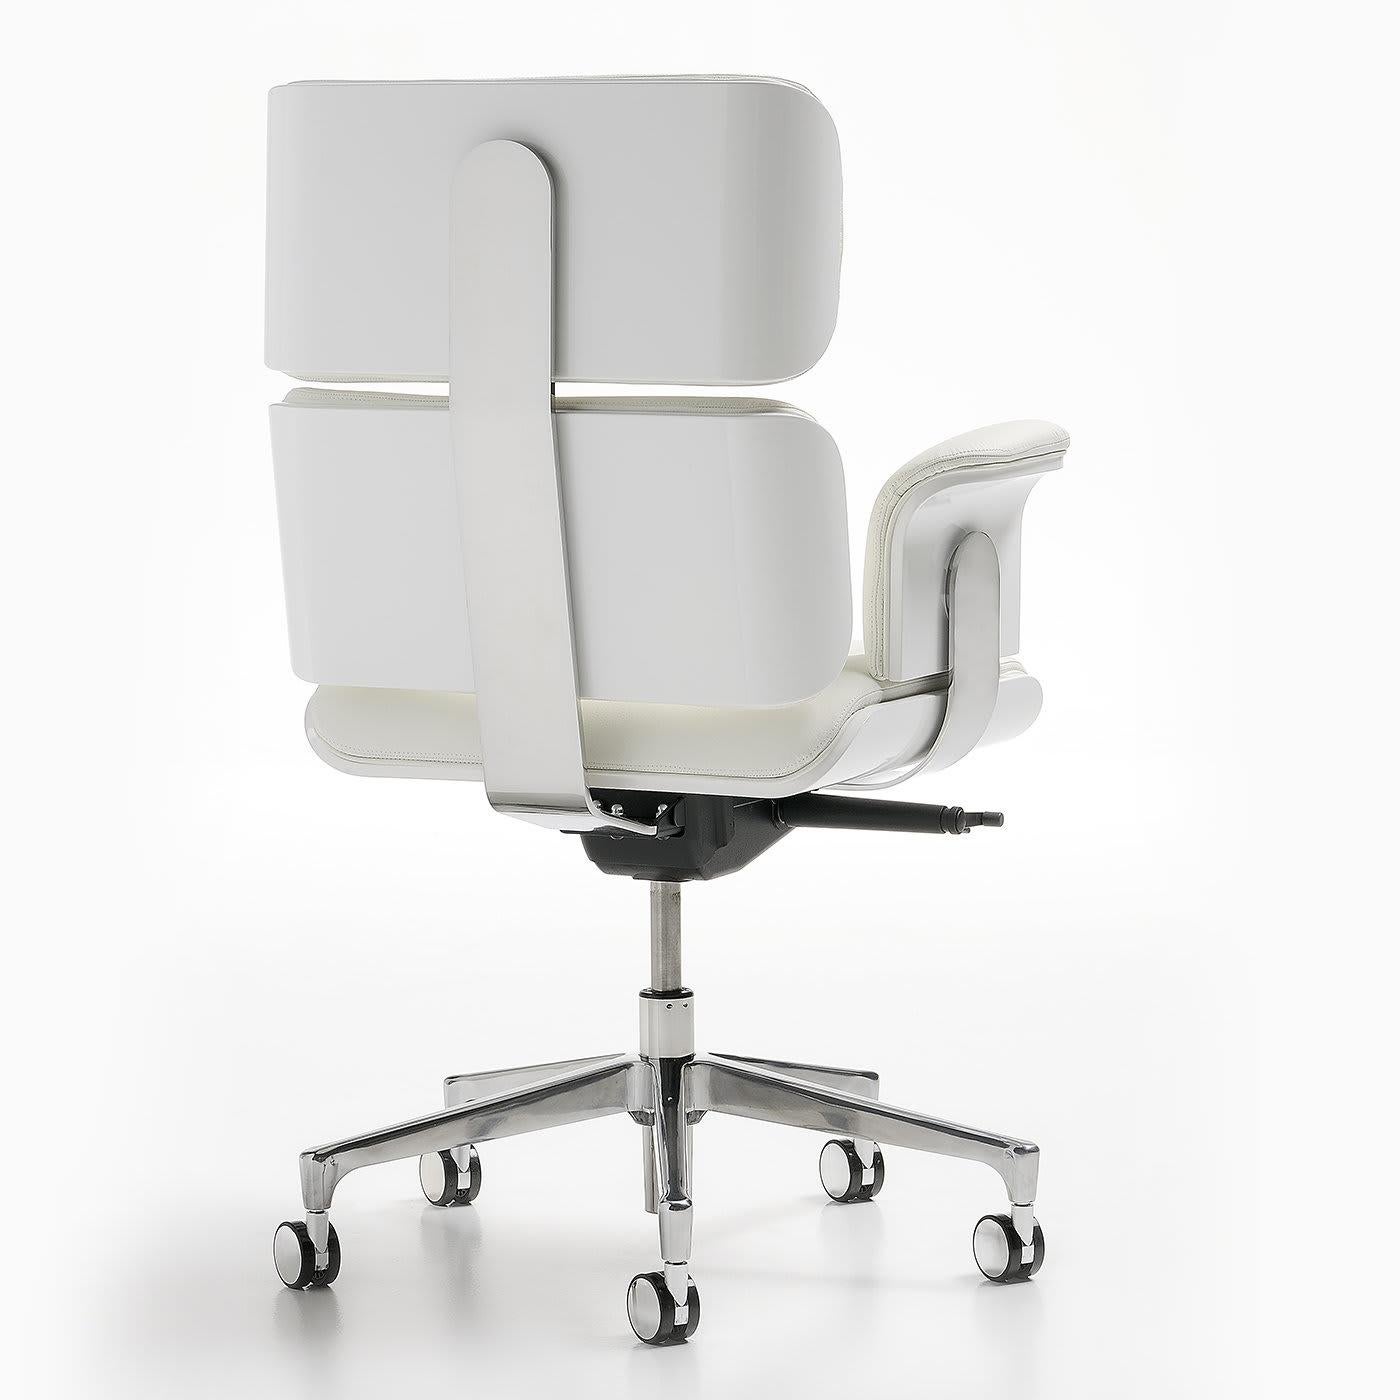 Ce fauteuil de luxe est recouvert de cuir véritable blanc avec des boutons en cristal Swarovski. La hauteur d'assise et la tension d'inclinaison sont entièrement réglables, et le fauteuil peut être bloqué dans cinq positions d'inclinaison